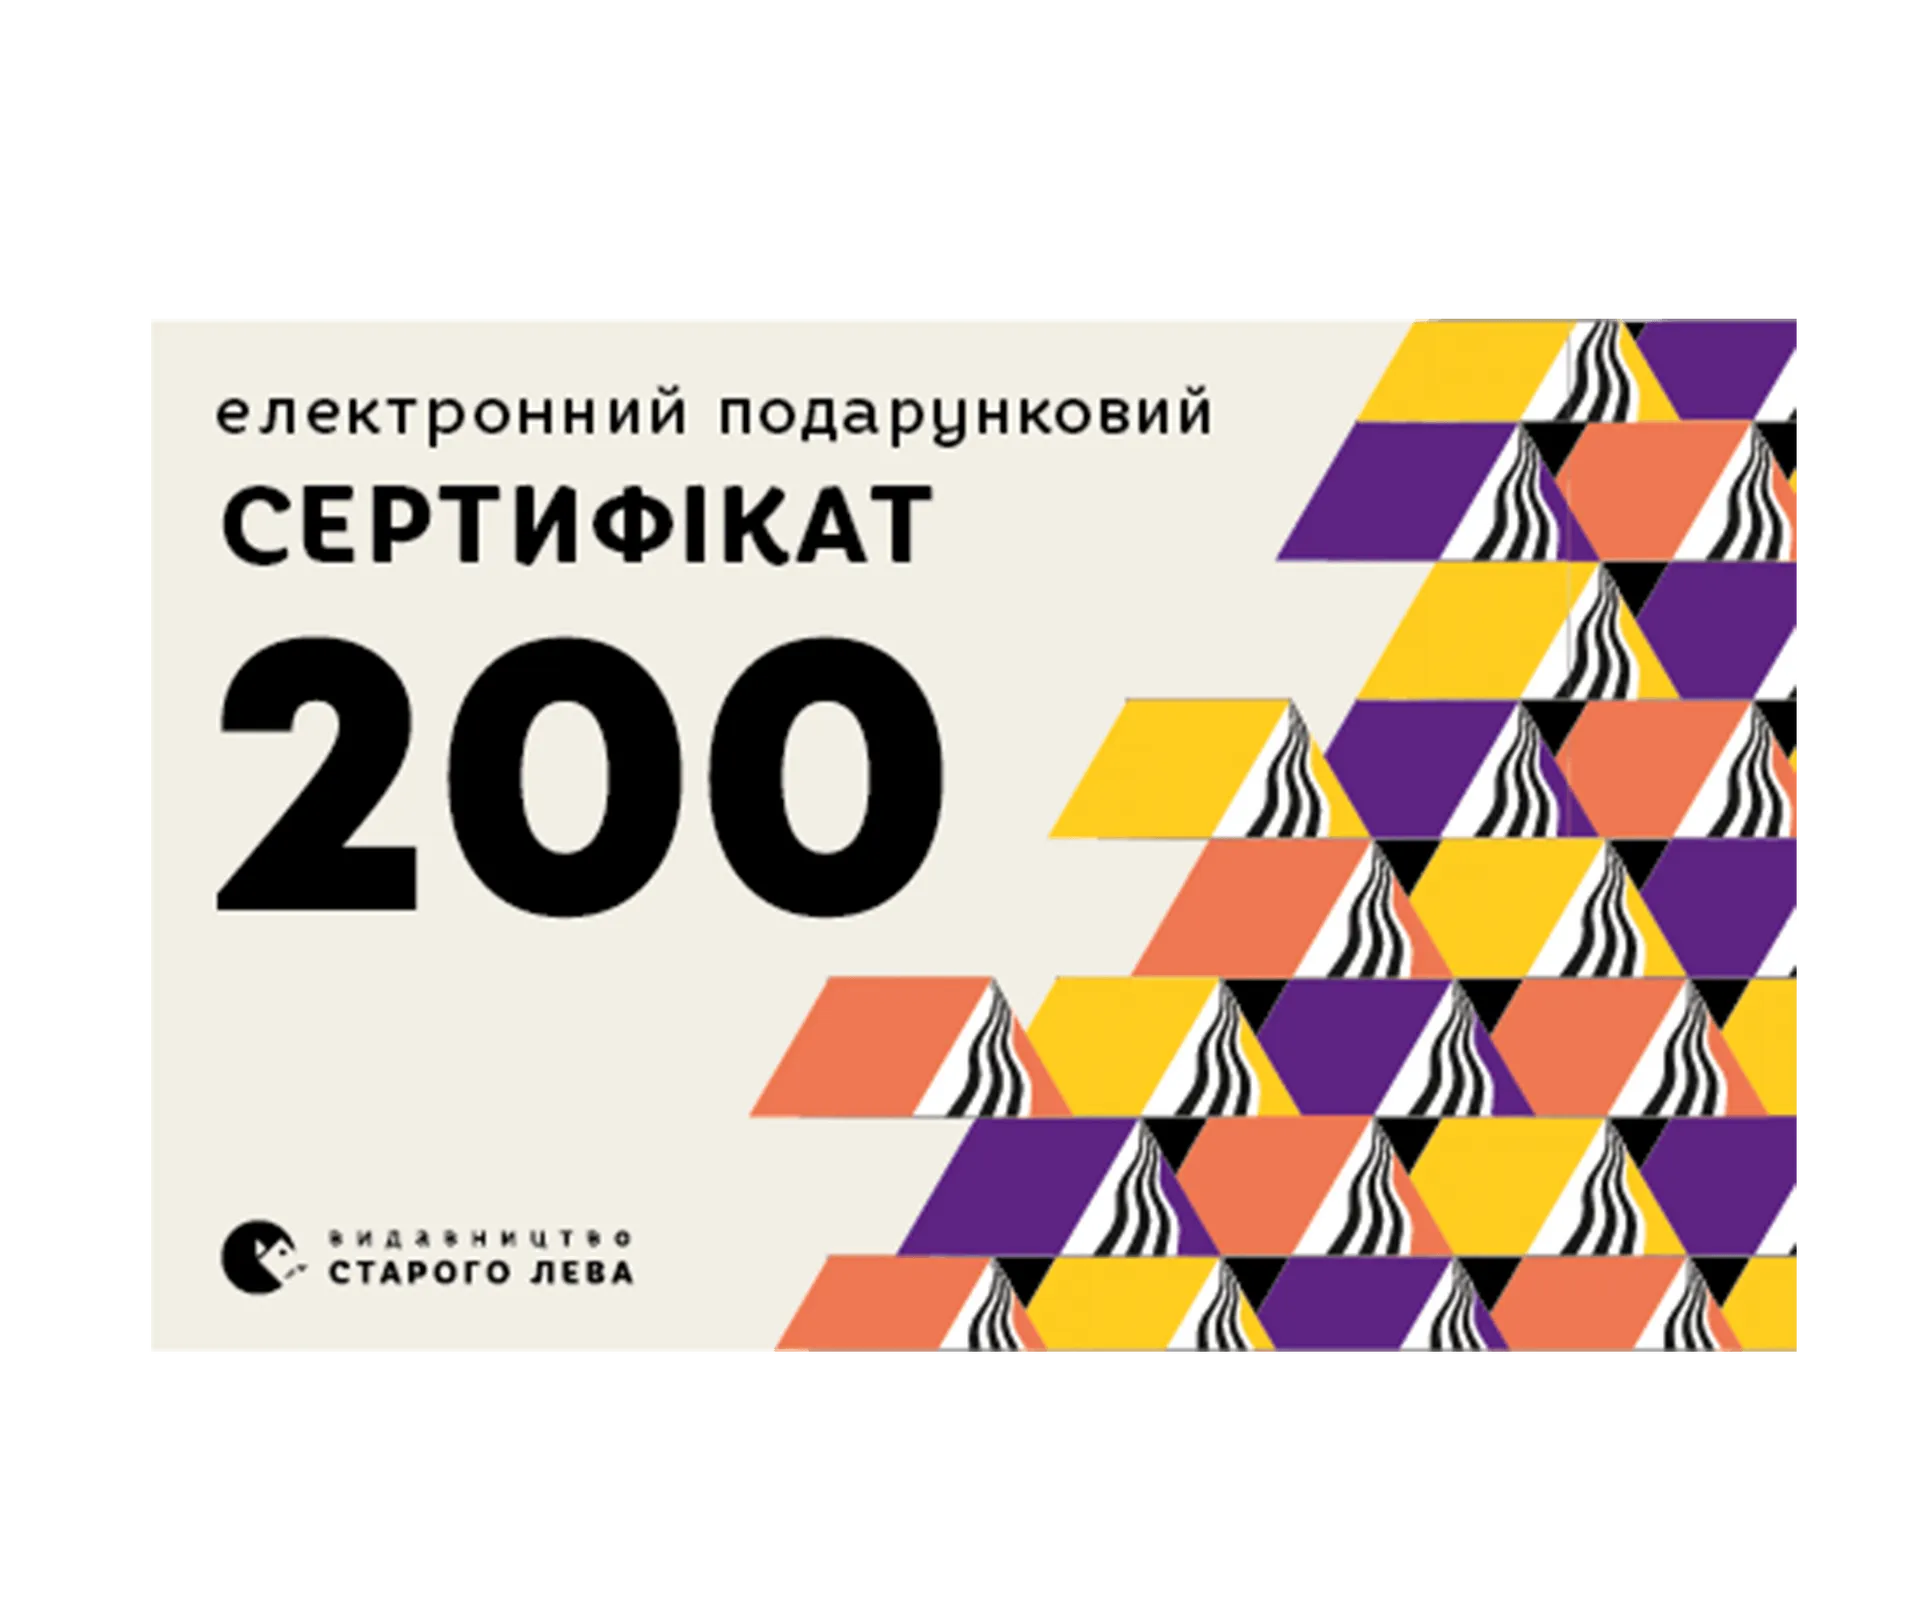 Електронний подарунковий сертифікат на суму 200 грн.